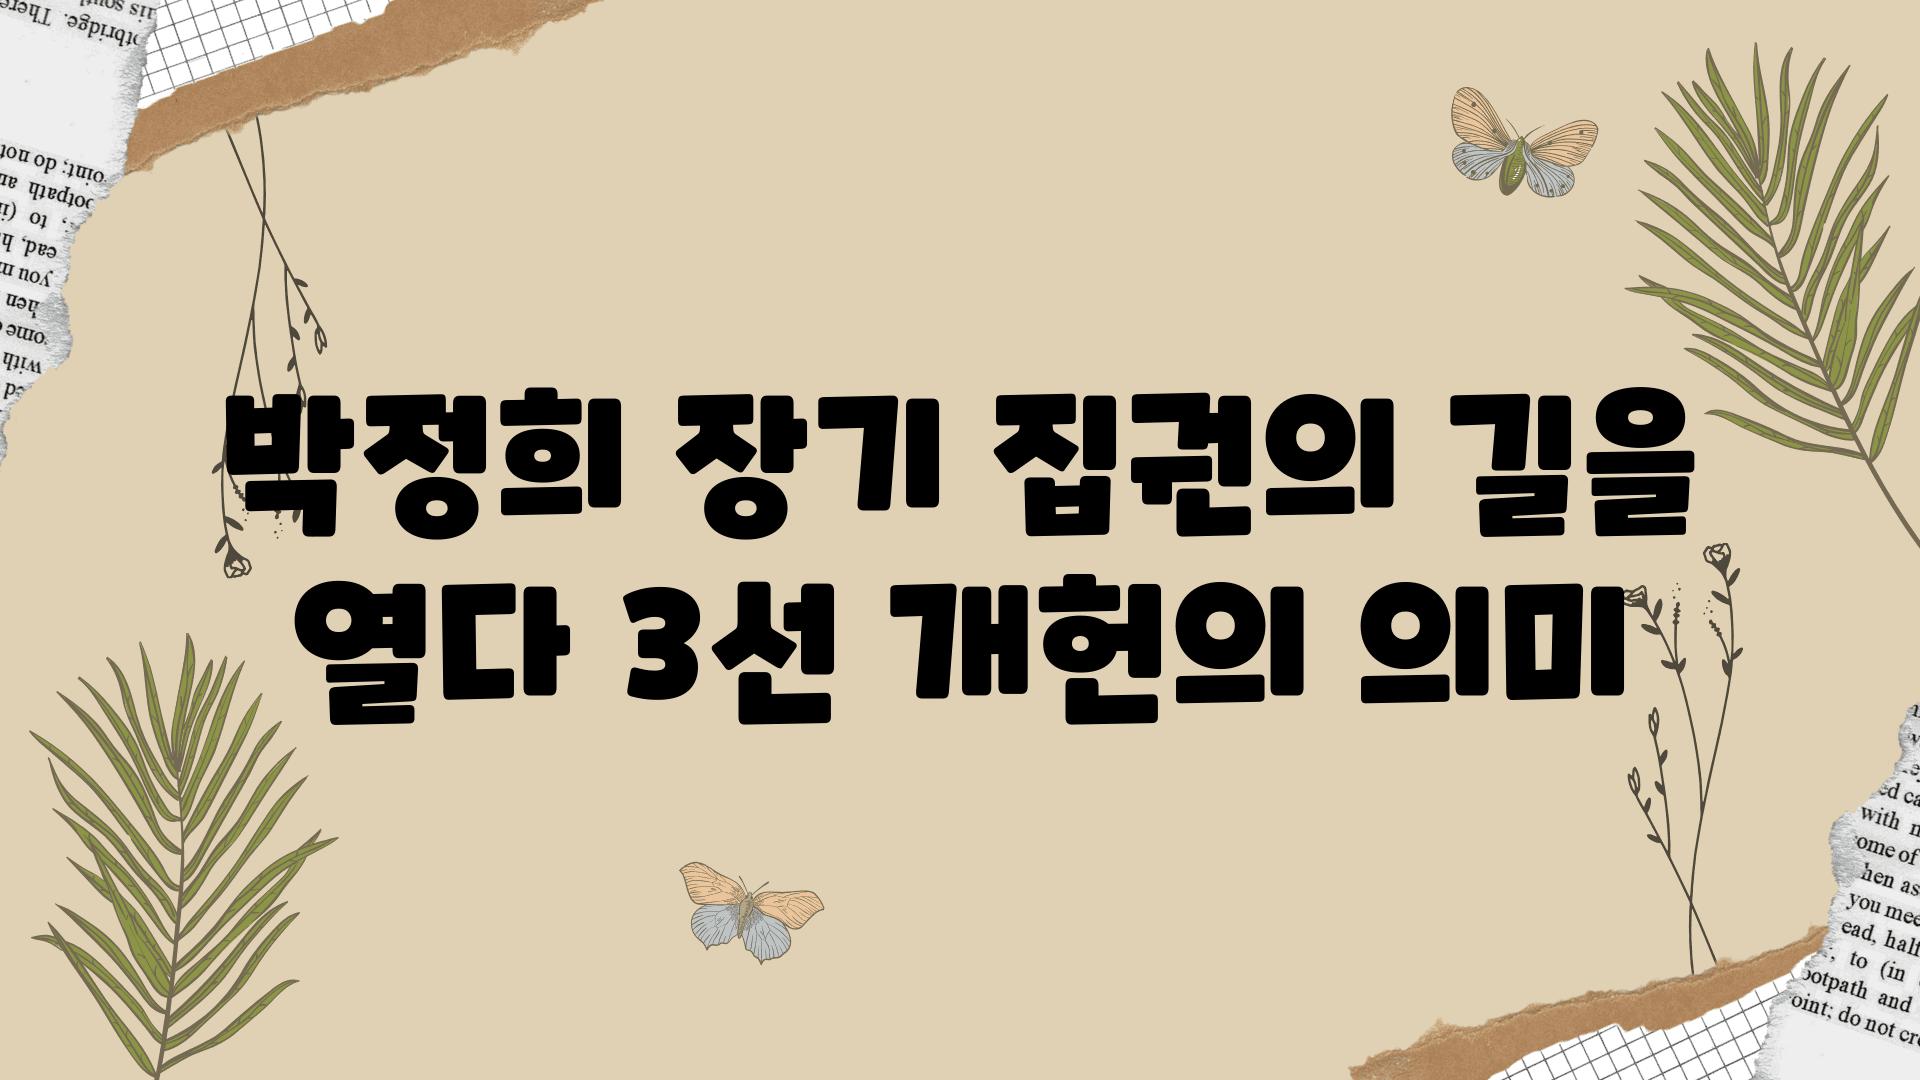 박정희 장기 집권의 길을 열다 3선 개헌의 의미